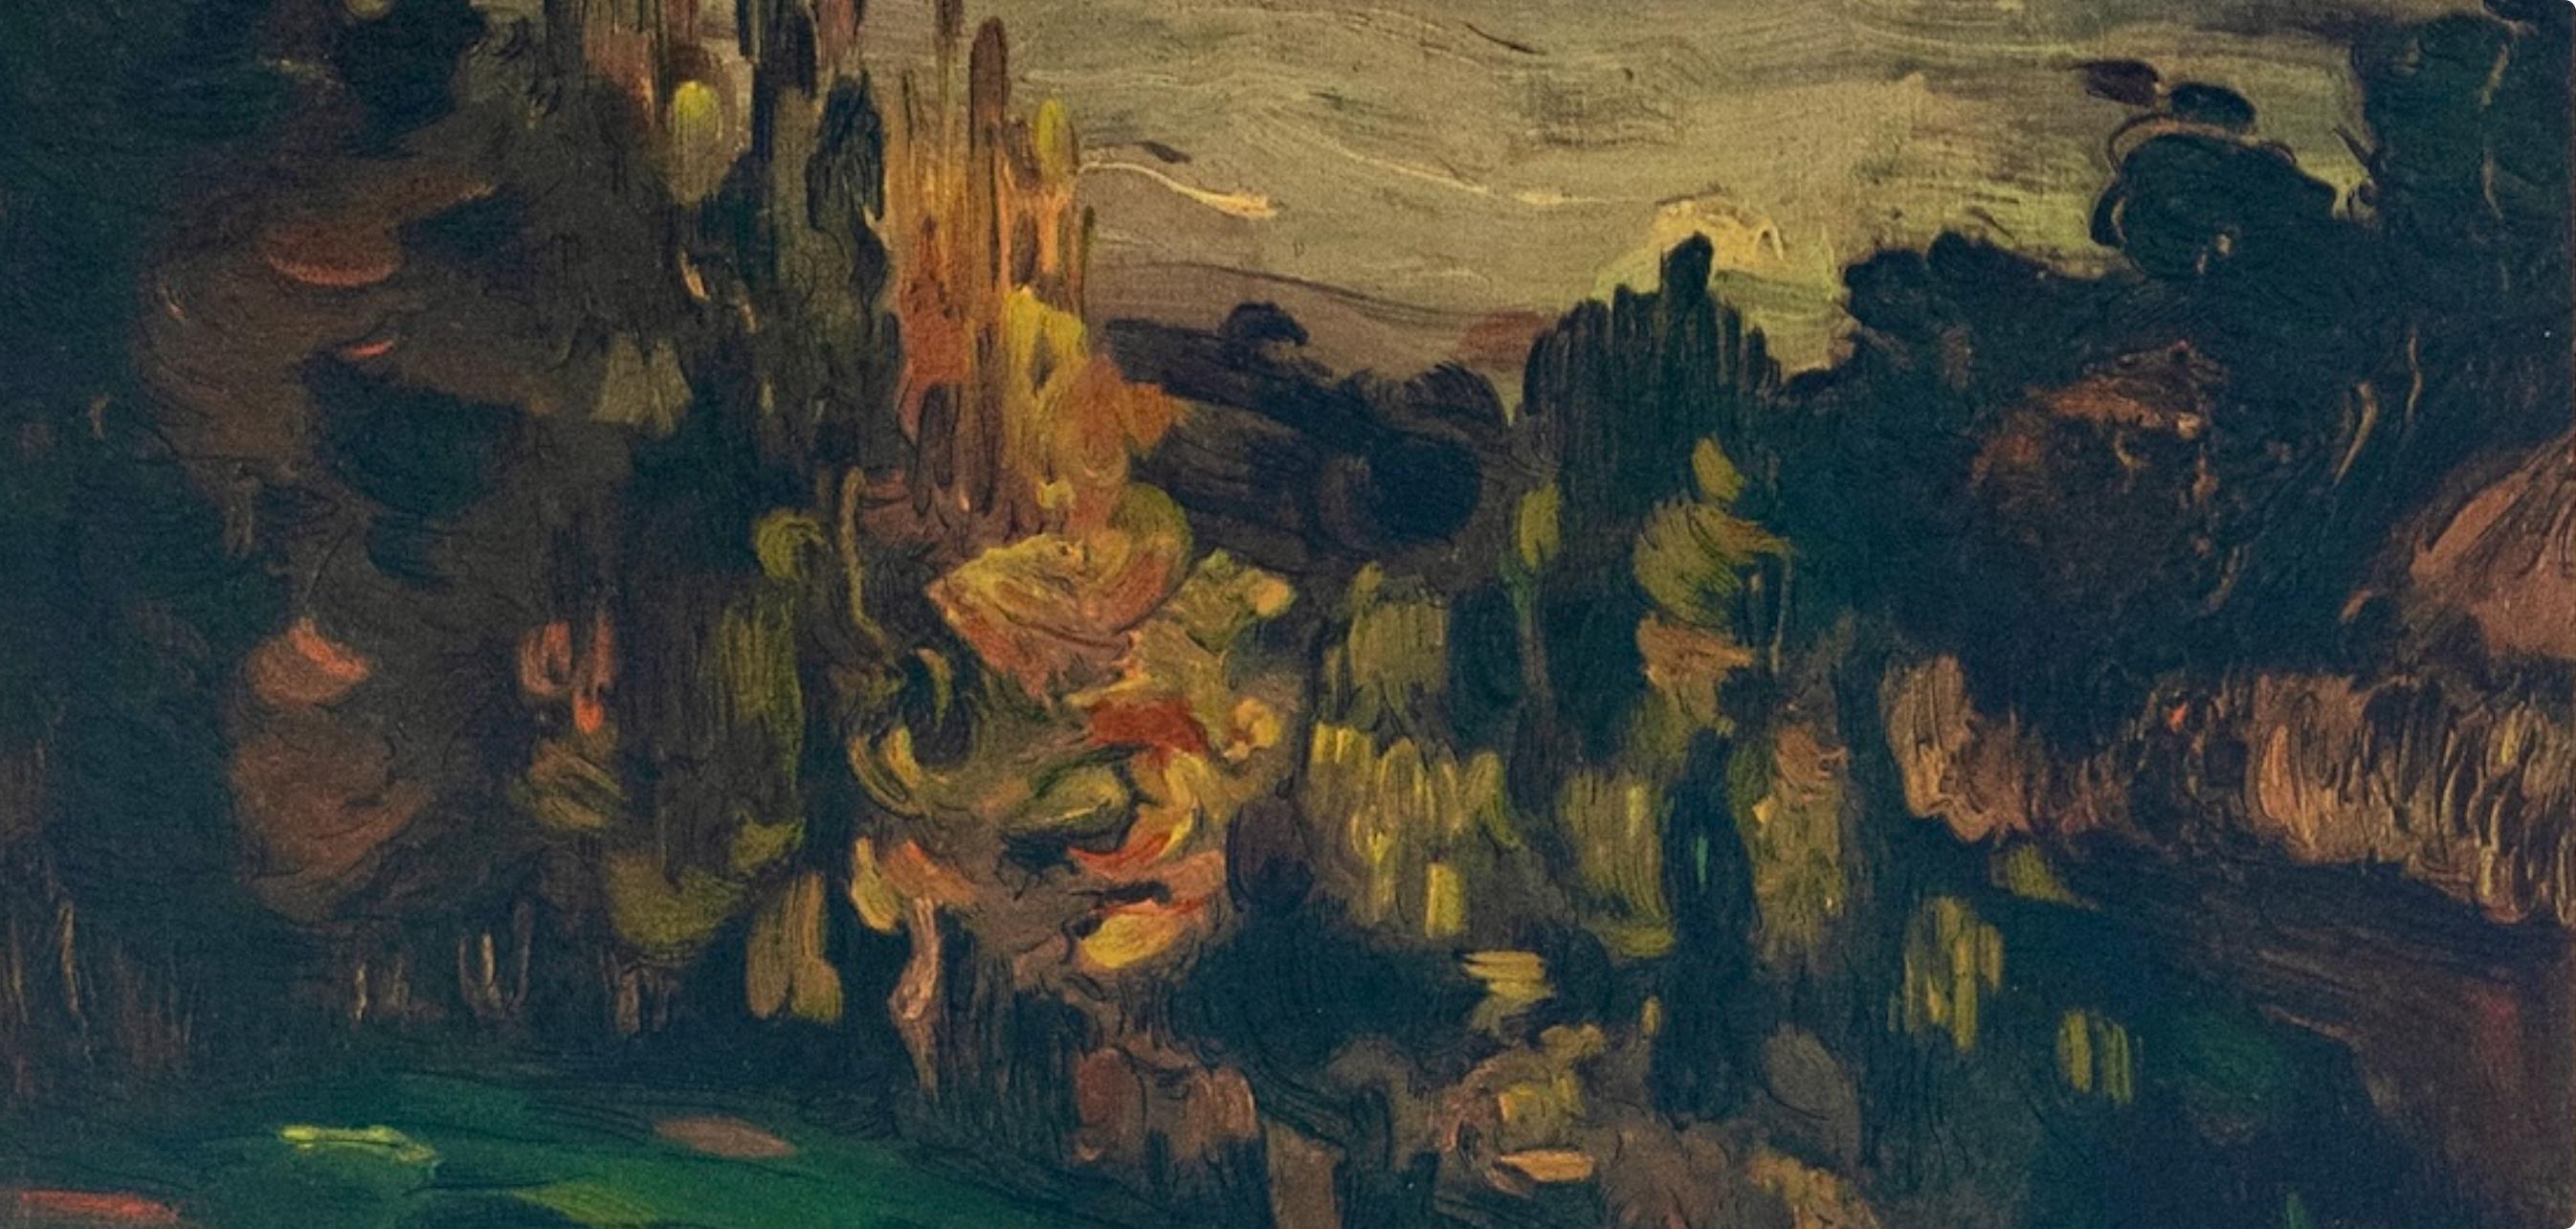 Cézanne, Paysage à Aix, Les Réalistes Lyriques (after) - Post-Impressionist Print by Paul Cézanne